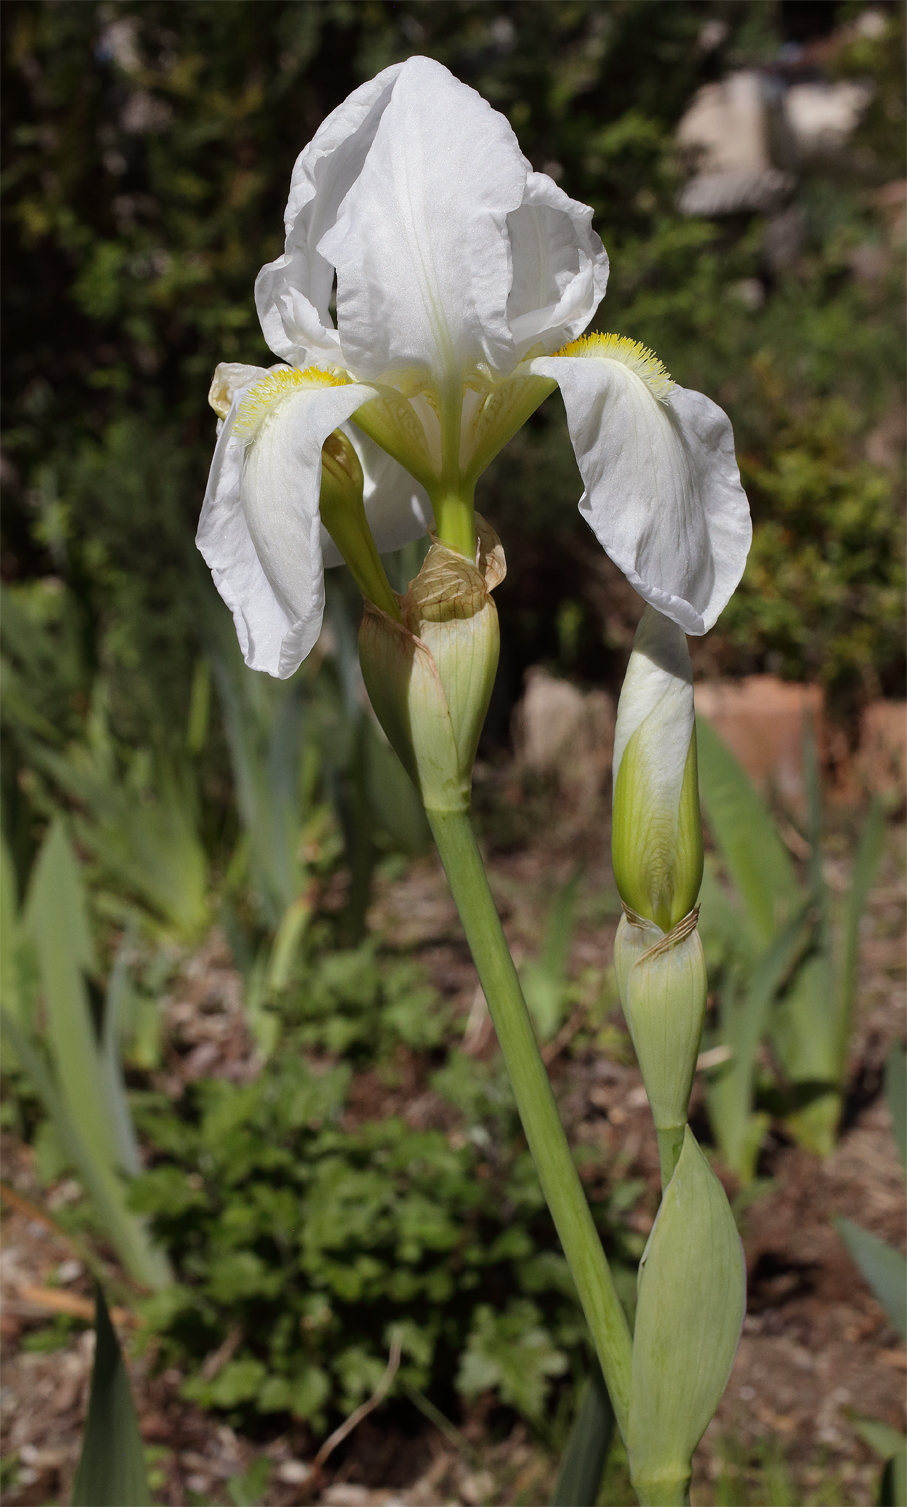 tipico scapo fiorifero di Iris florentina L. con uno dei 2 fiori apicali fiorito, l'altro in boccio coÃ¬ come quello sottostante portato dal corto peduncolo